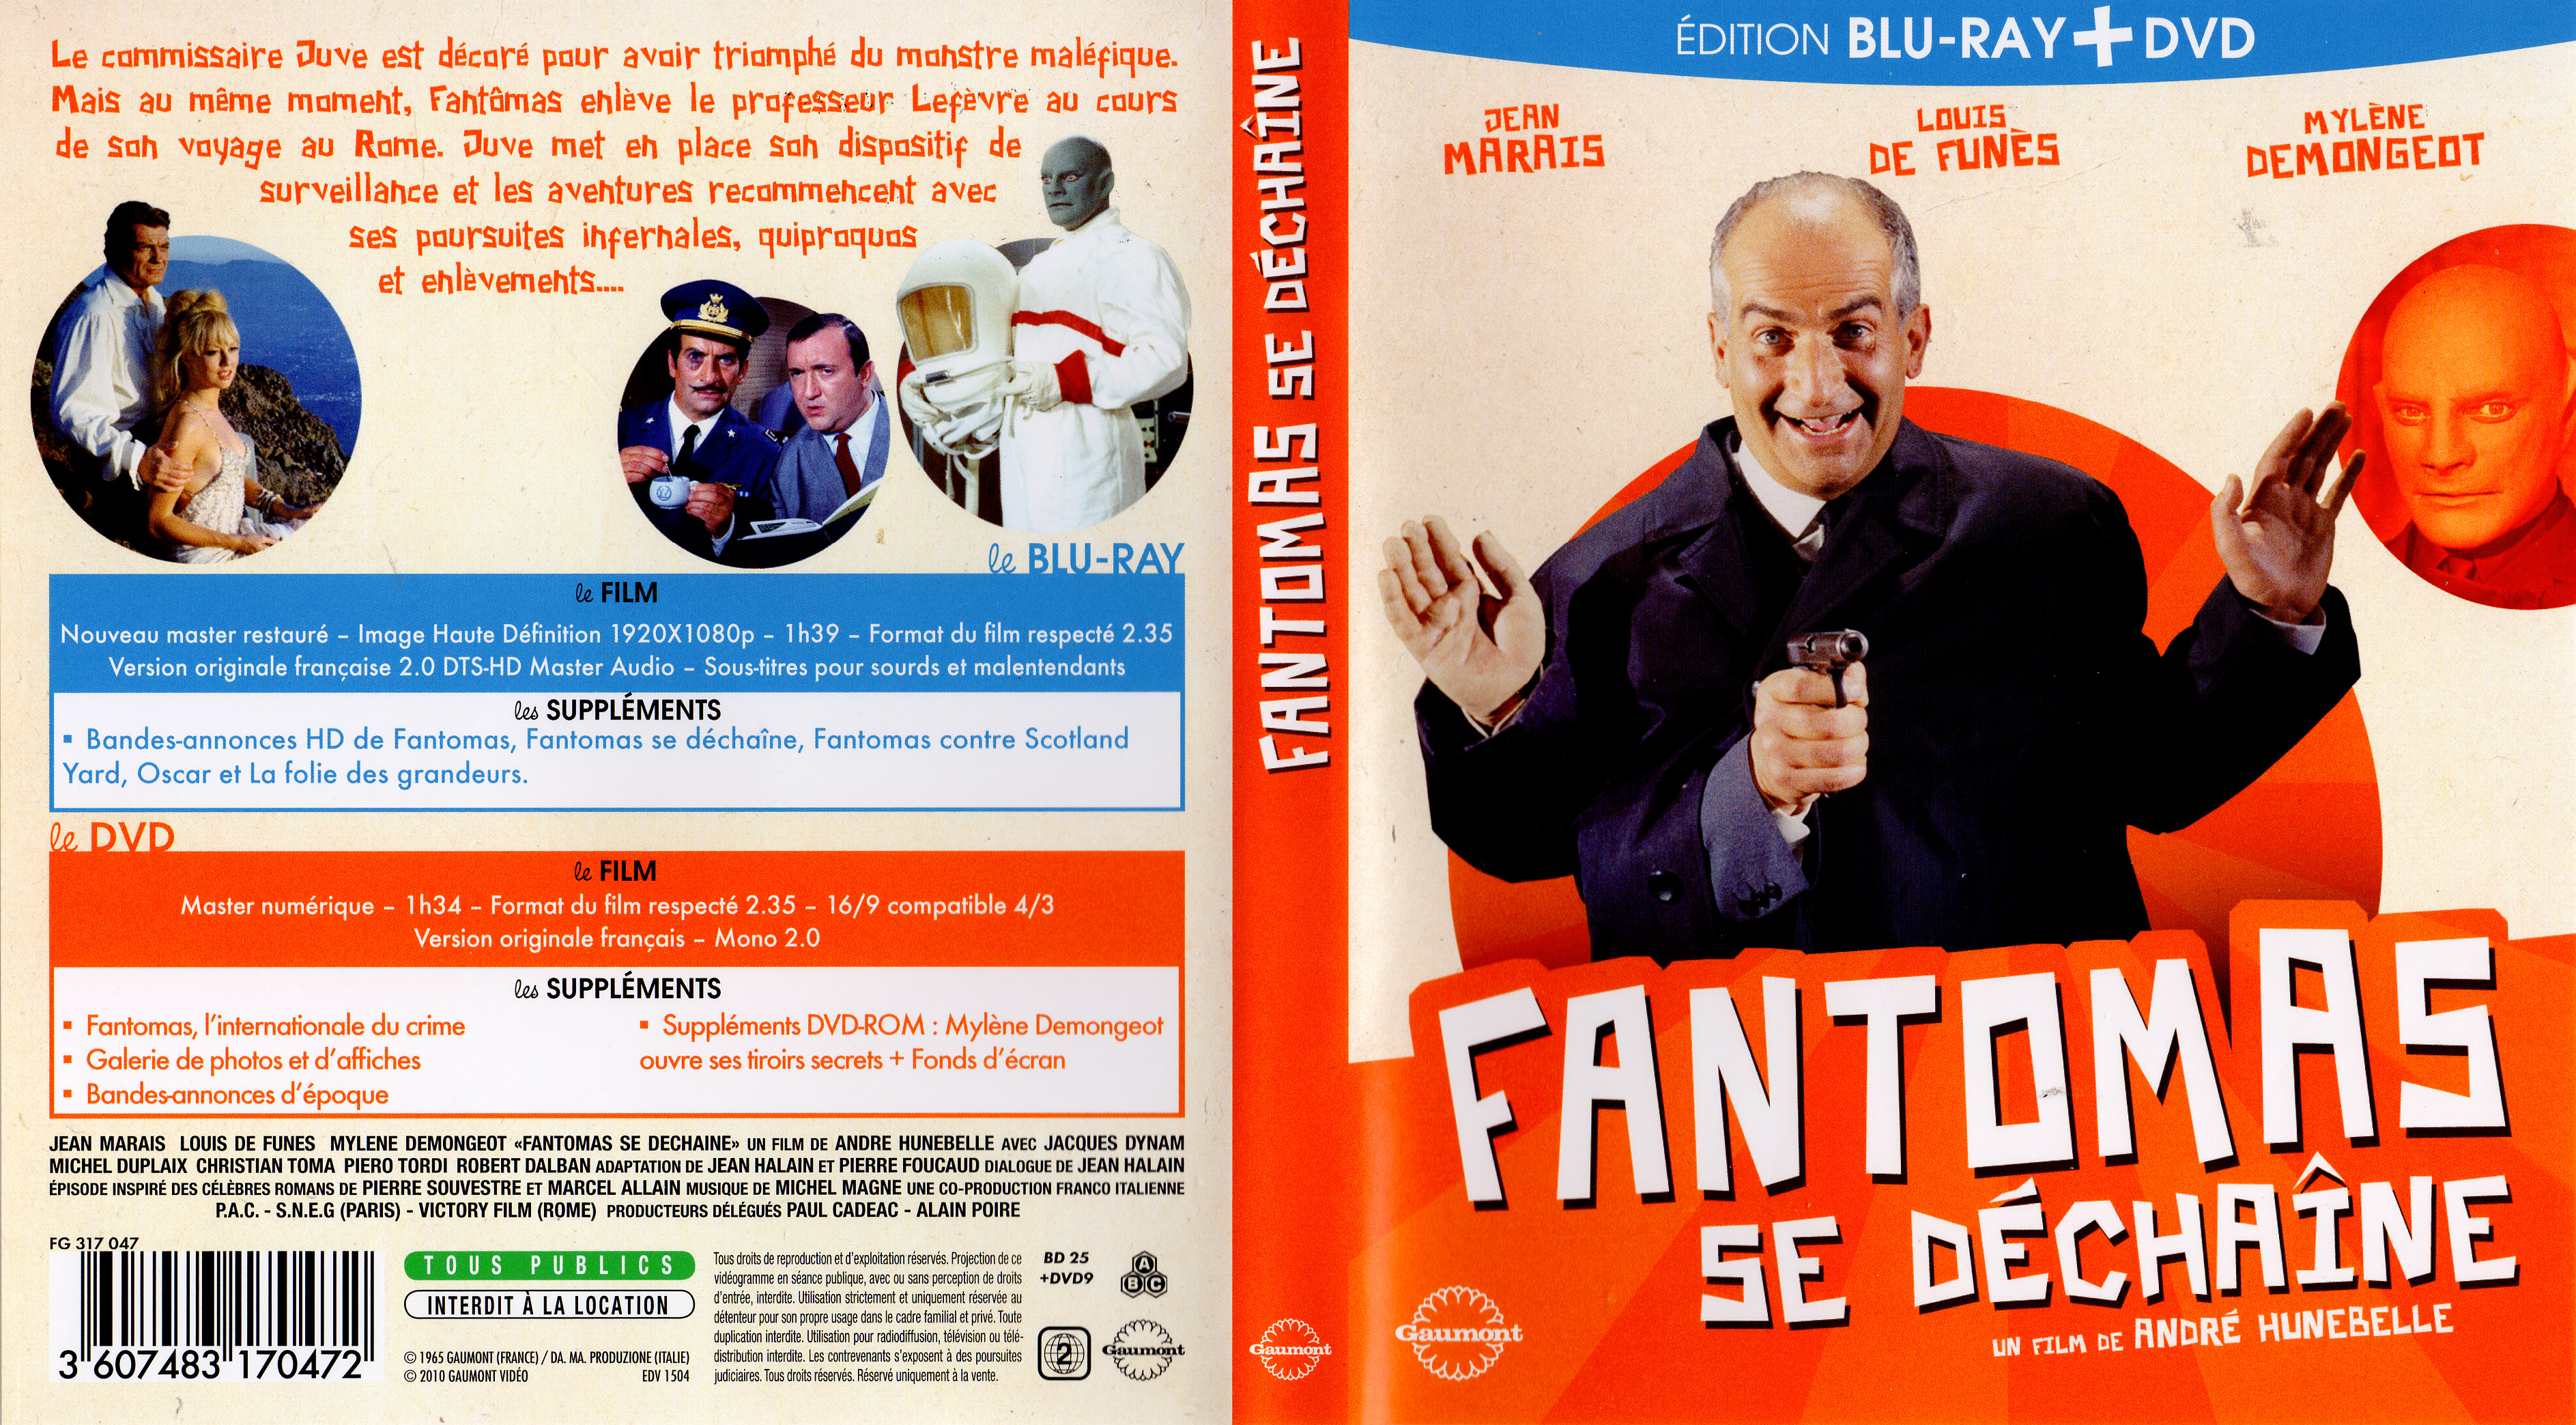 Jaquette DVD Fantomas se dchaine (BLU-RAY)